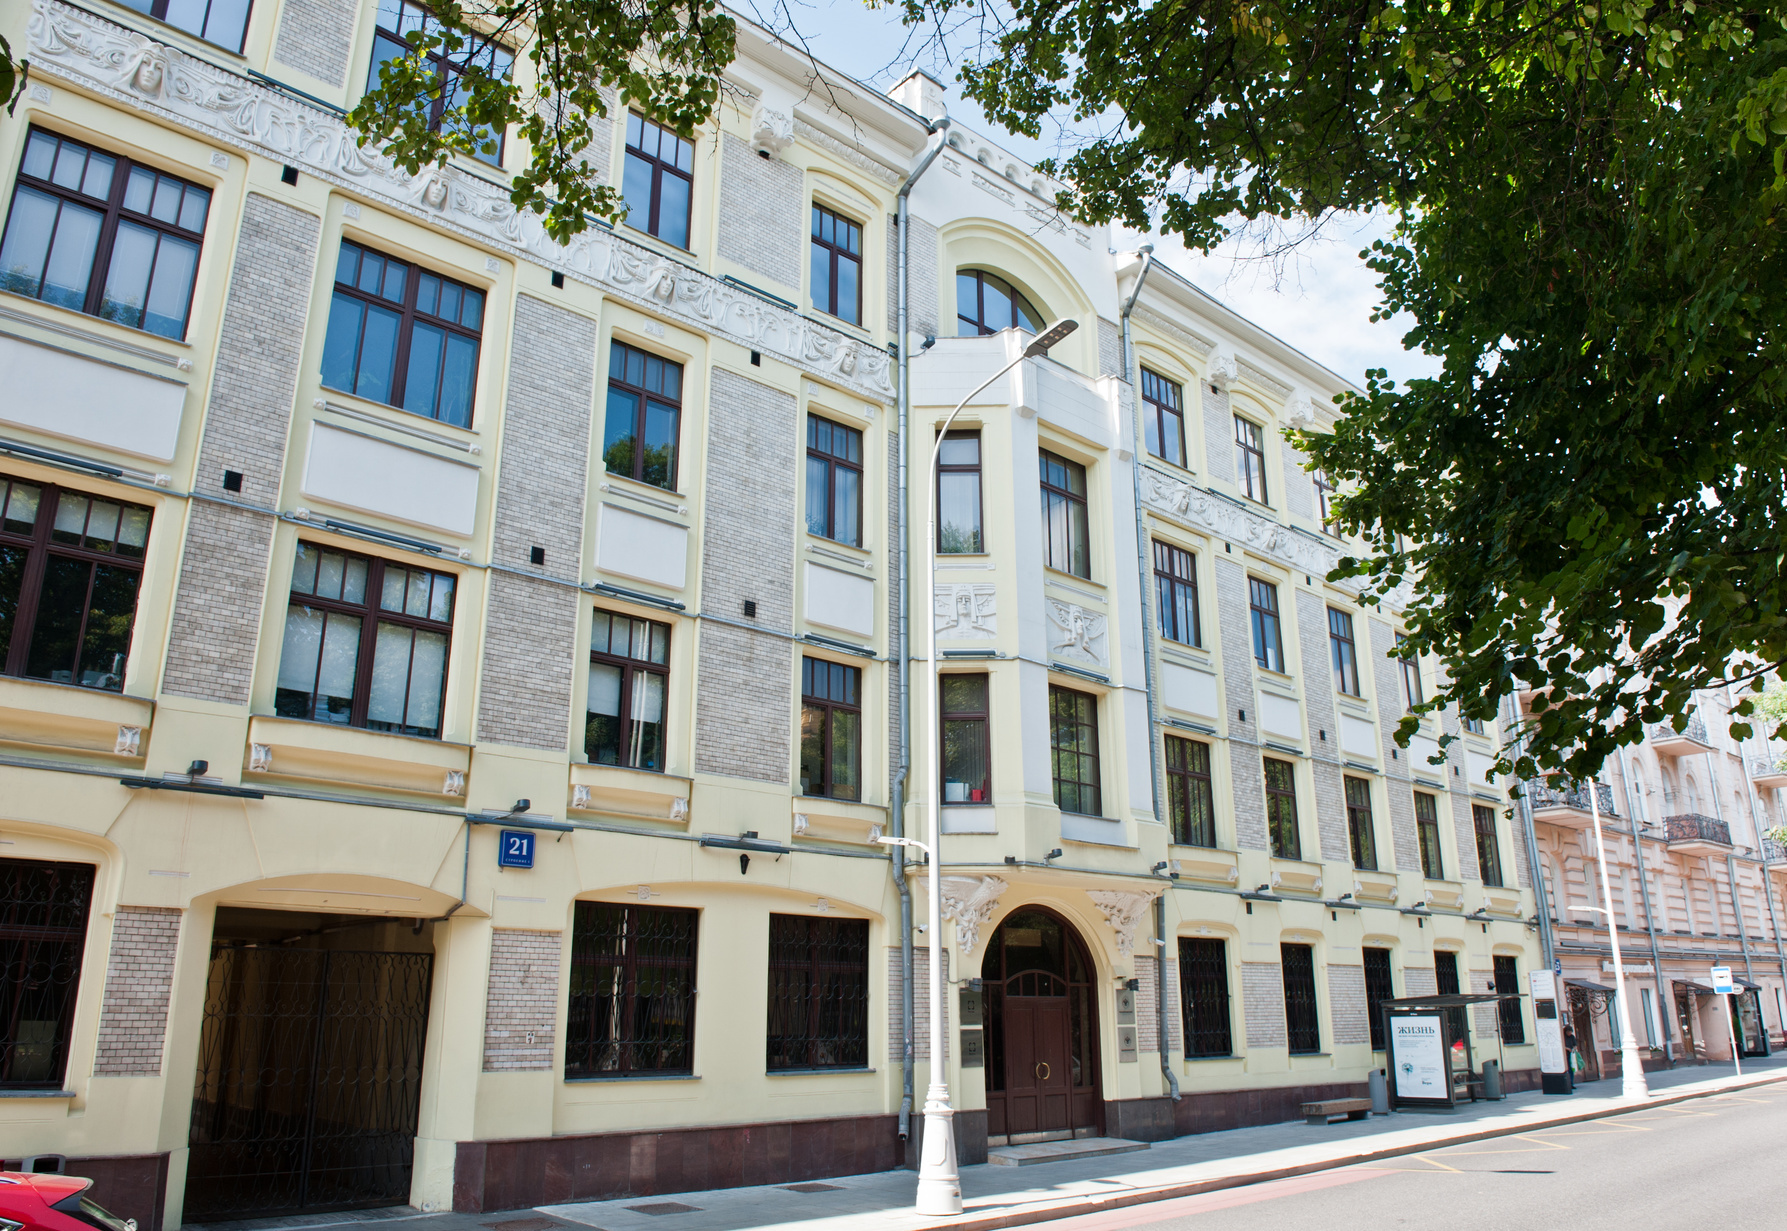 Доходный дом Бочаровых в Москве